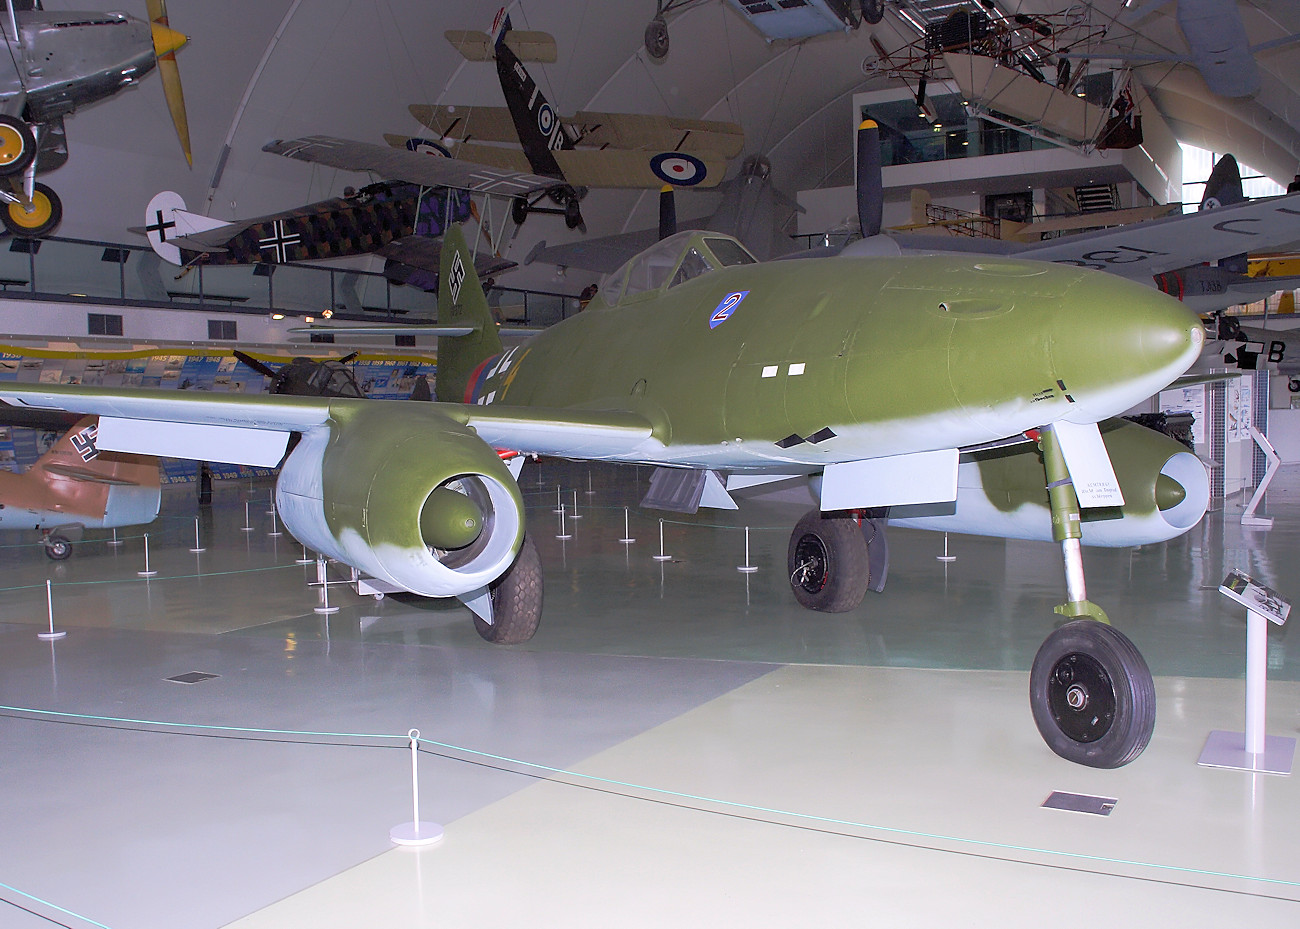 Me 262 Schwalbe - Der Erster in Serienfertigung hergestellte strahlgetriebene Jäger der Welt